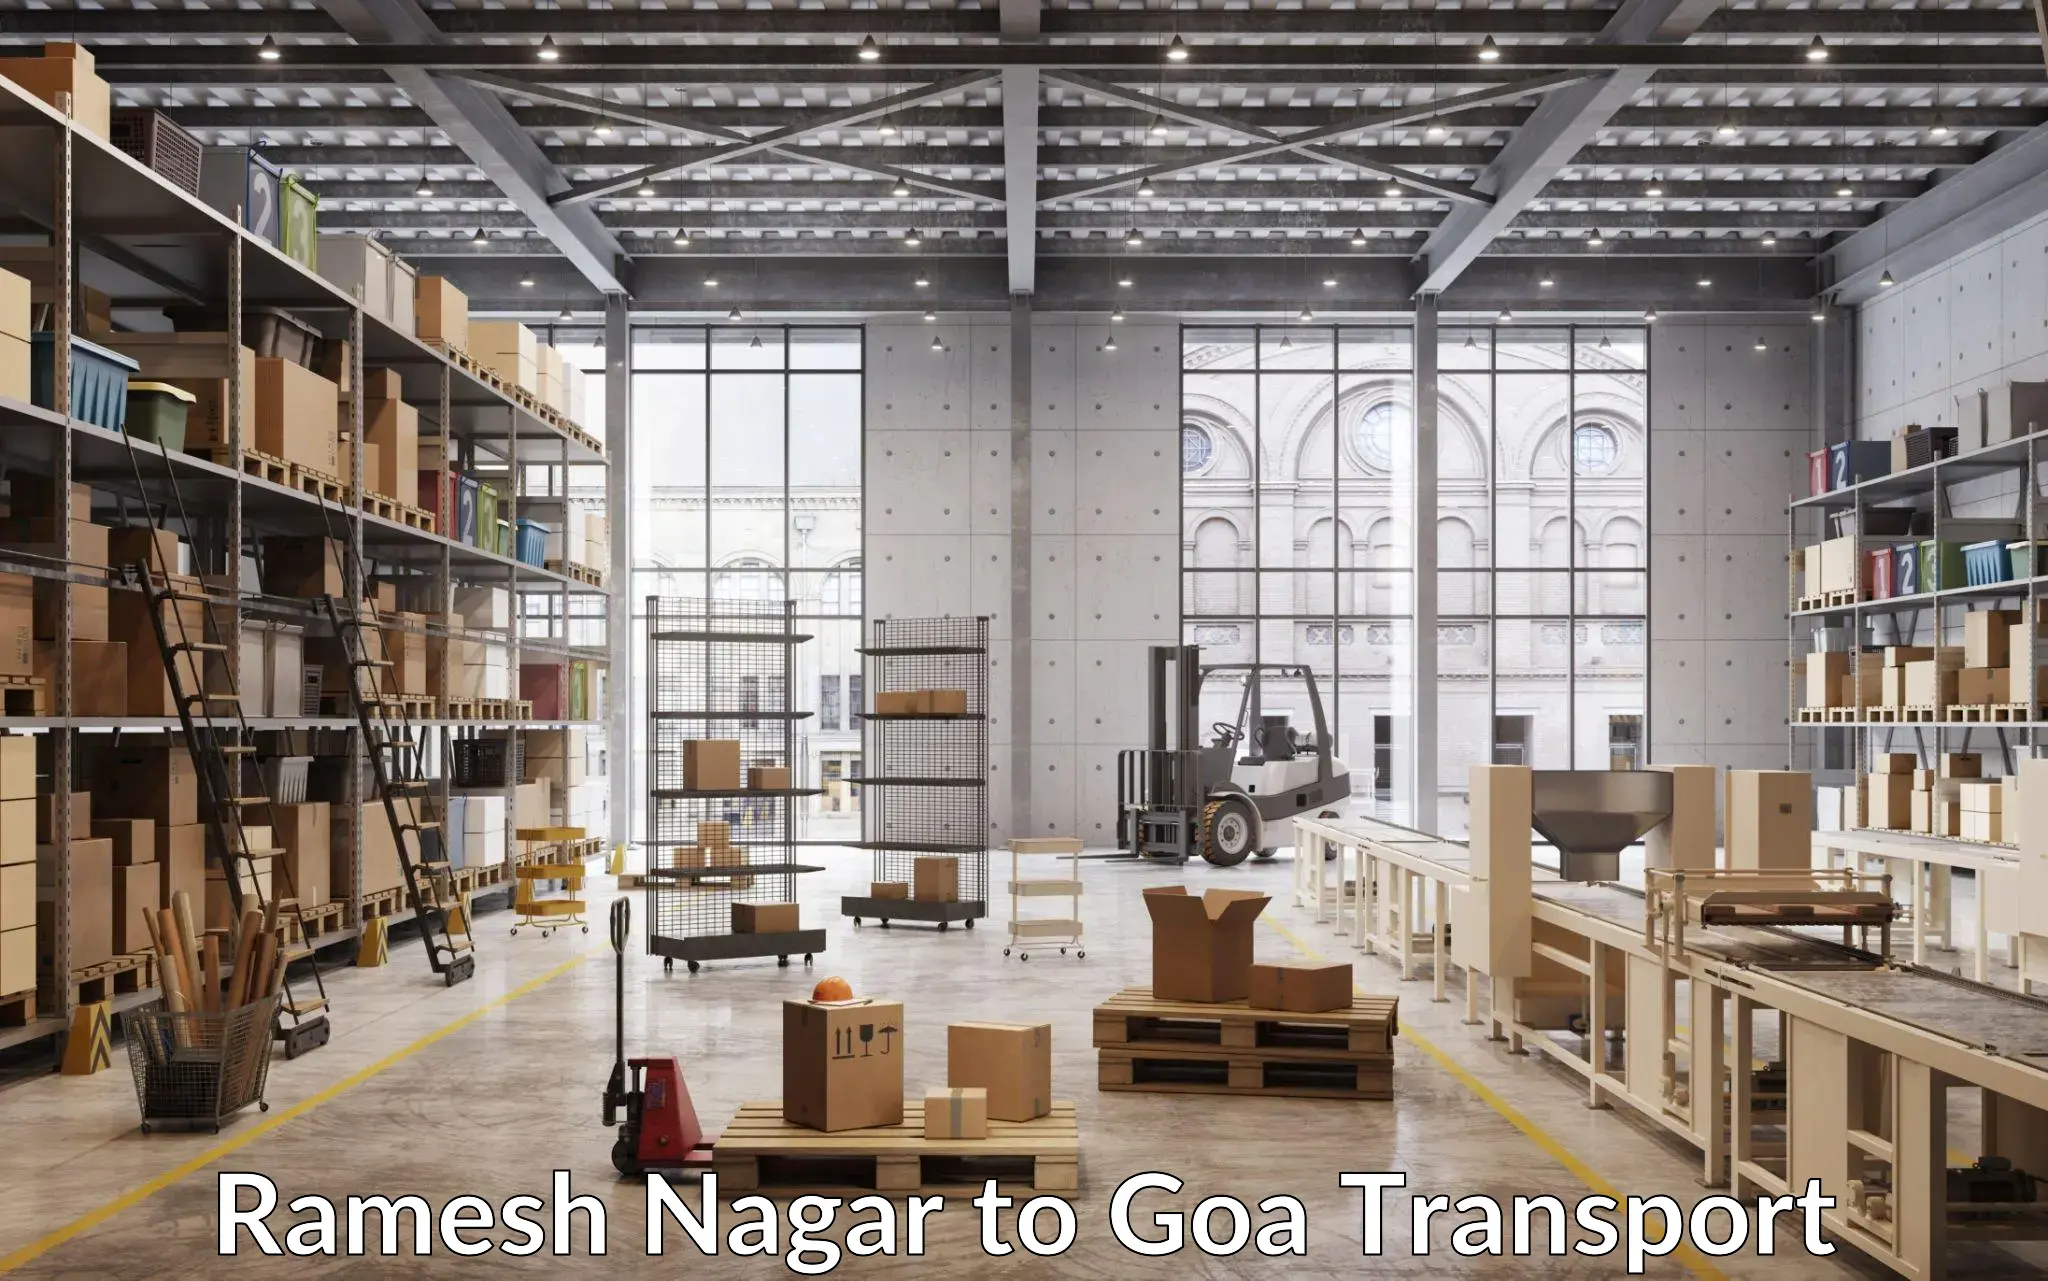 Online transport service Ramesh Nagar to Goa